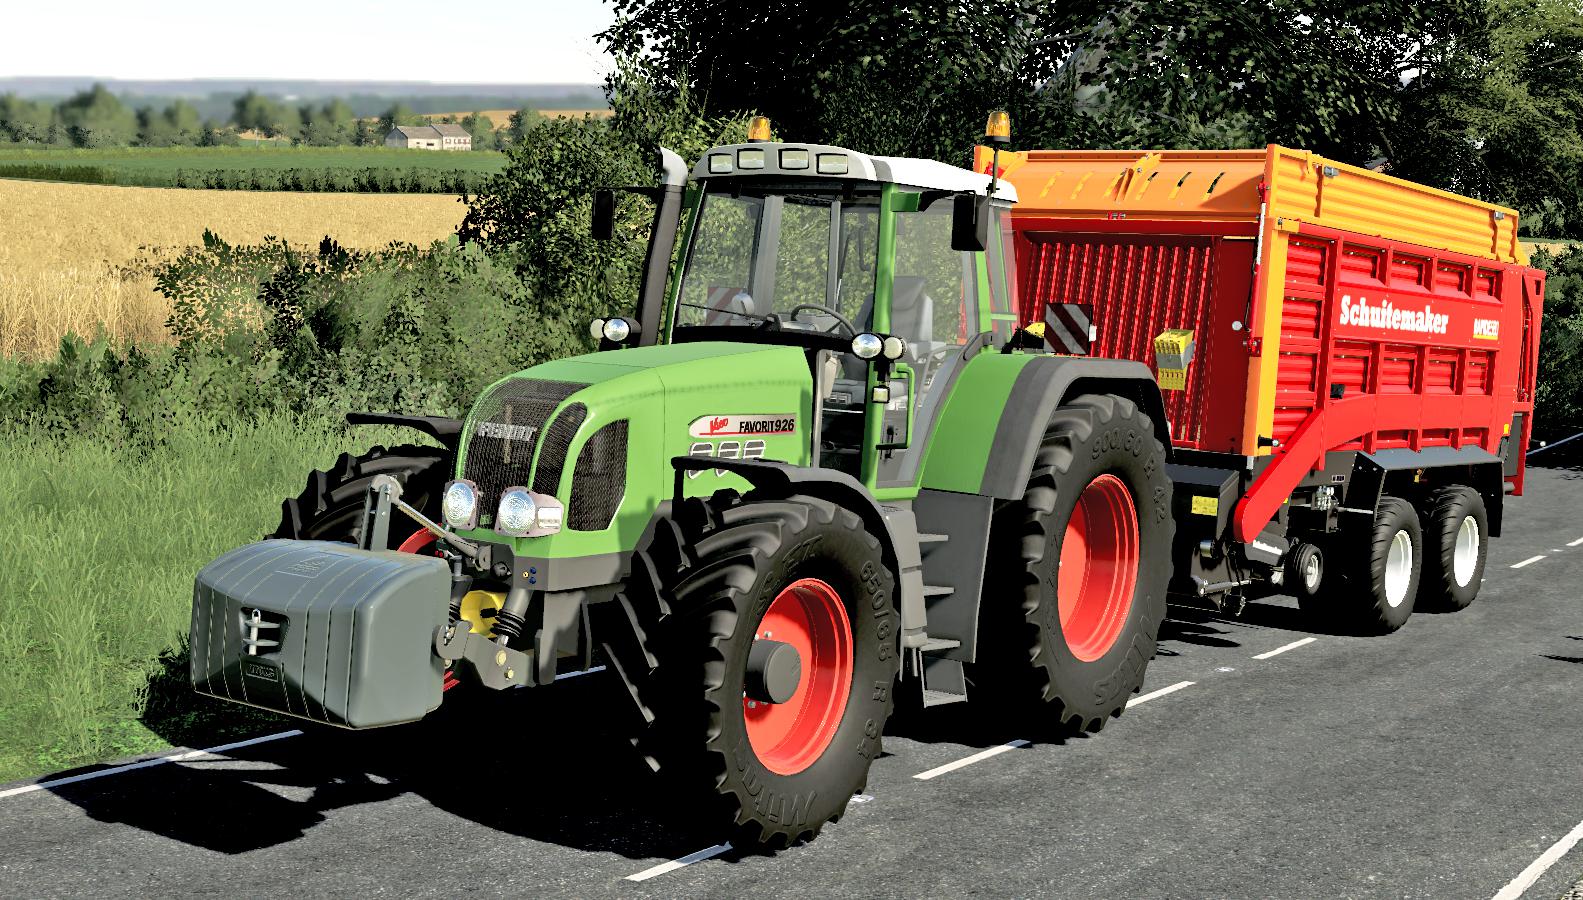 Tractor Fendt Favorit 900 Vario Tms Series V10 Farming Simulator 22 6446